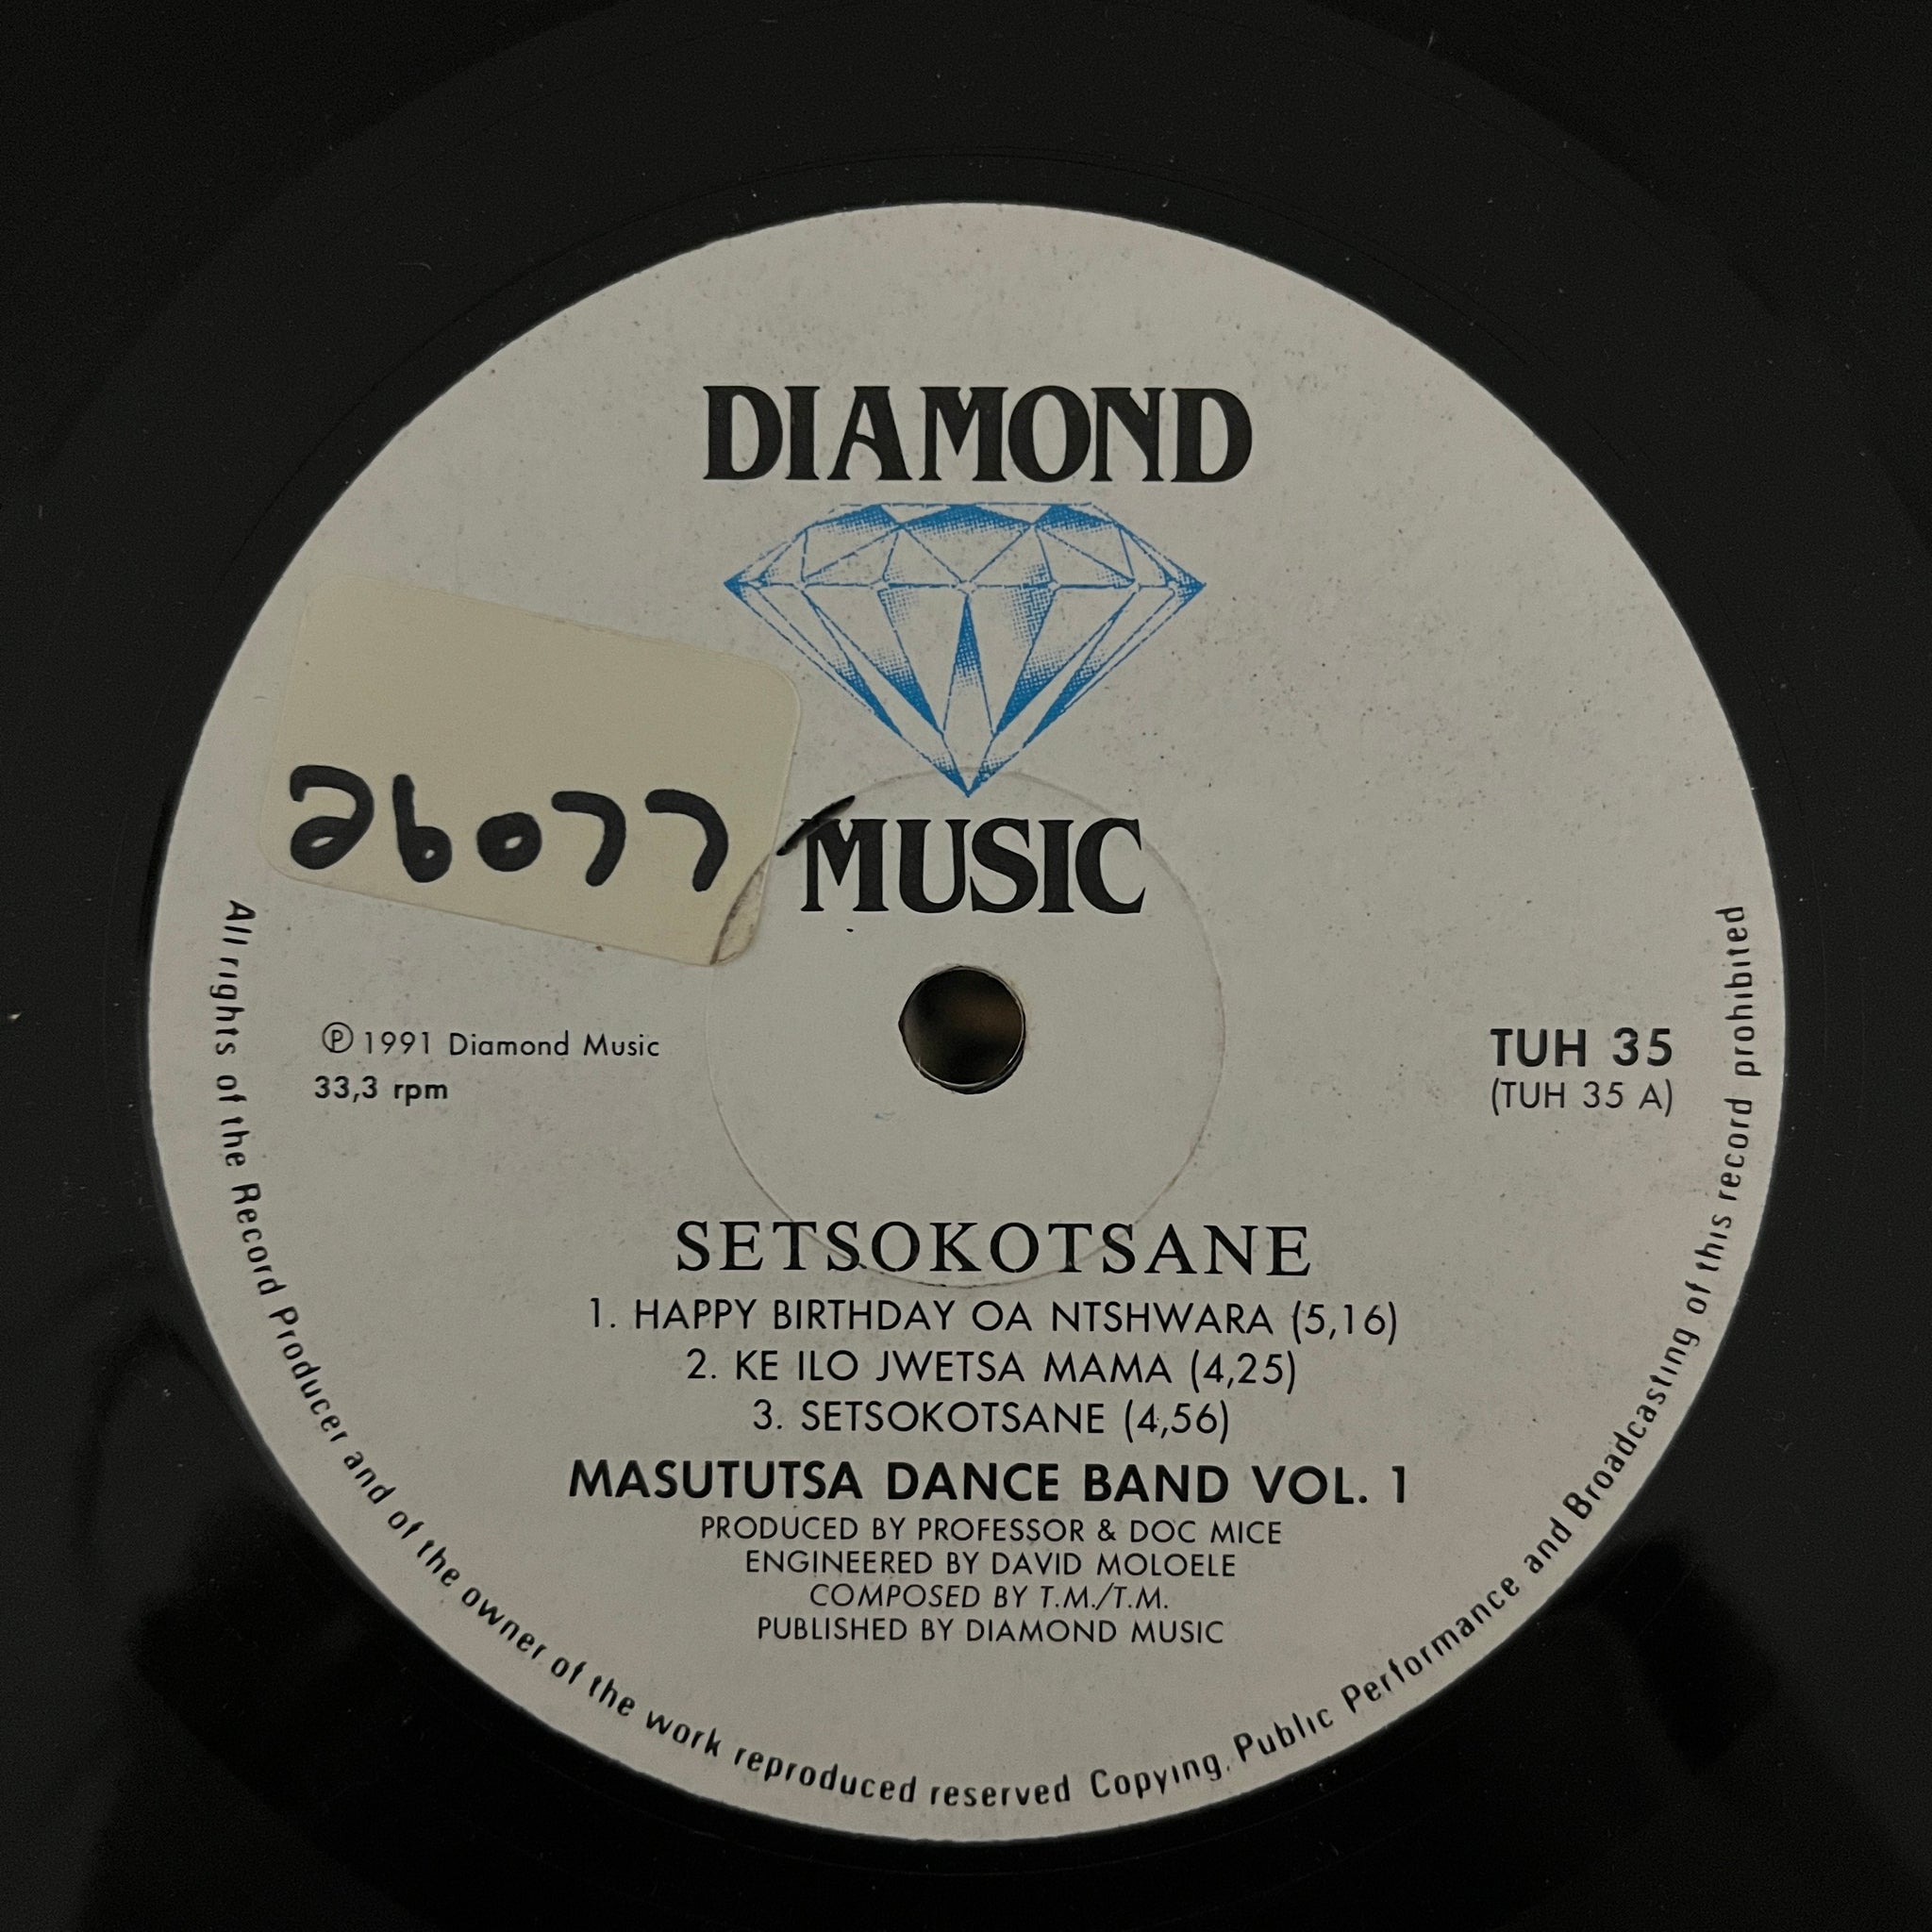 Masututsa Dance Band Vol. 1 - Setsokotsane